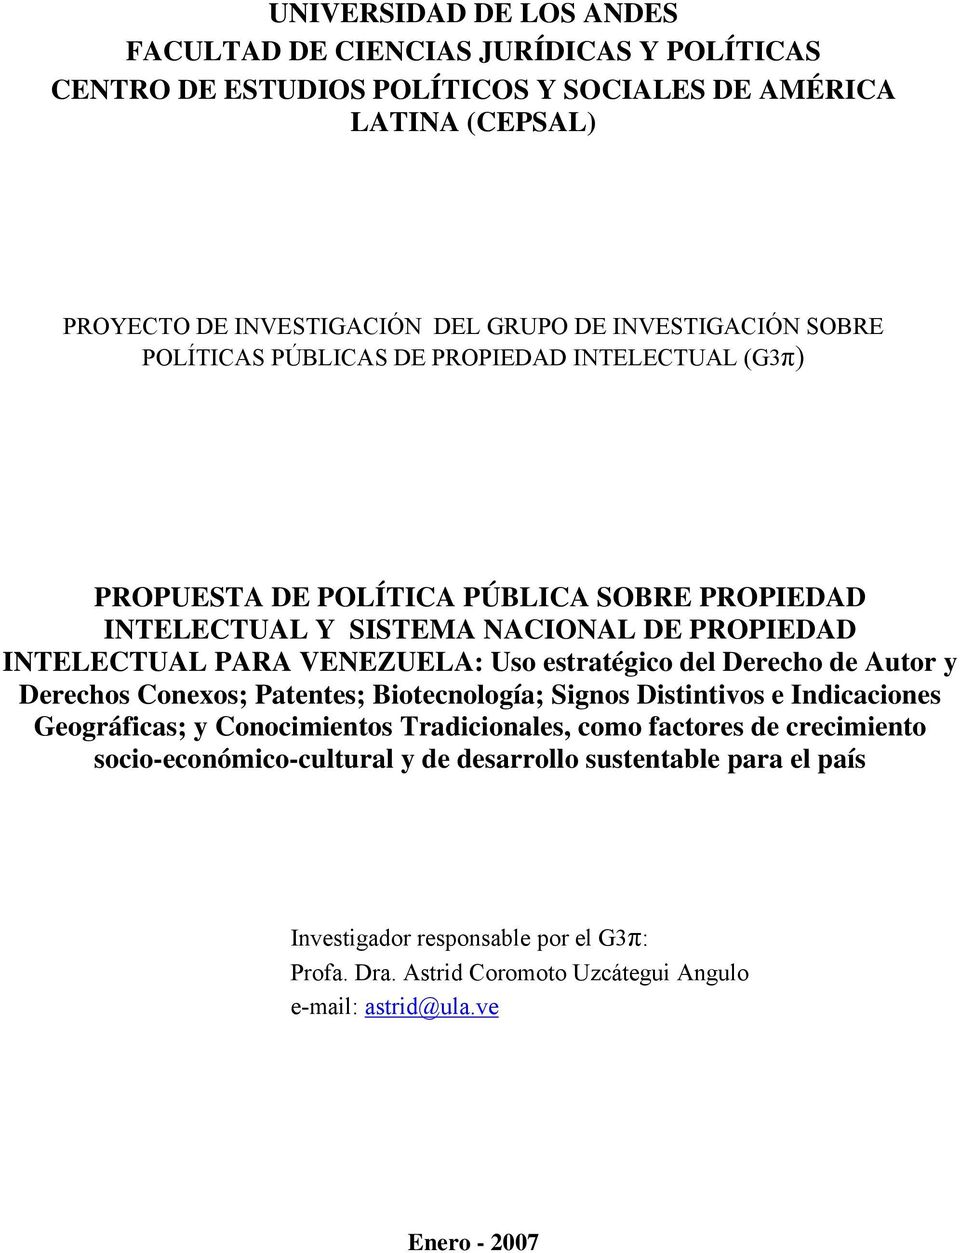 VENEZUELA: Uso estratégico del Derecho de Autor y Derechos Conexos; Patentes; Biotecnología; Signos Distintivos e Indicaciones Geográficas; y Conocimientos Tradicionales, como